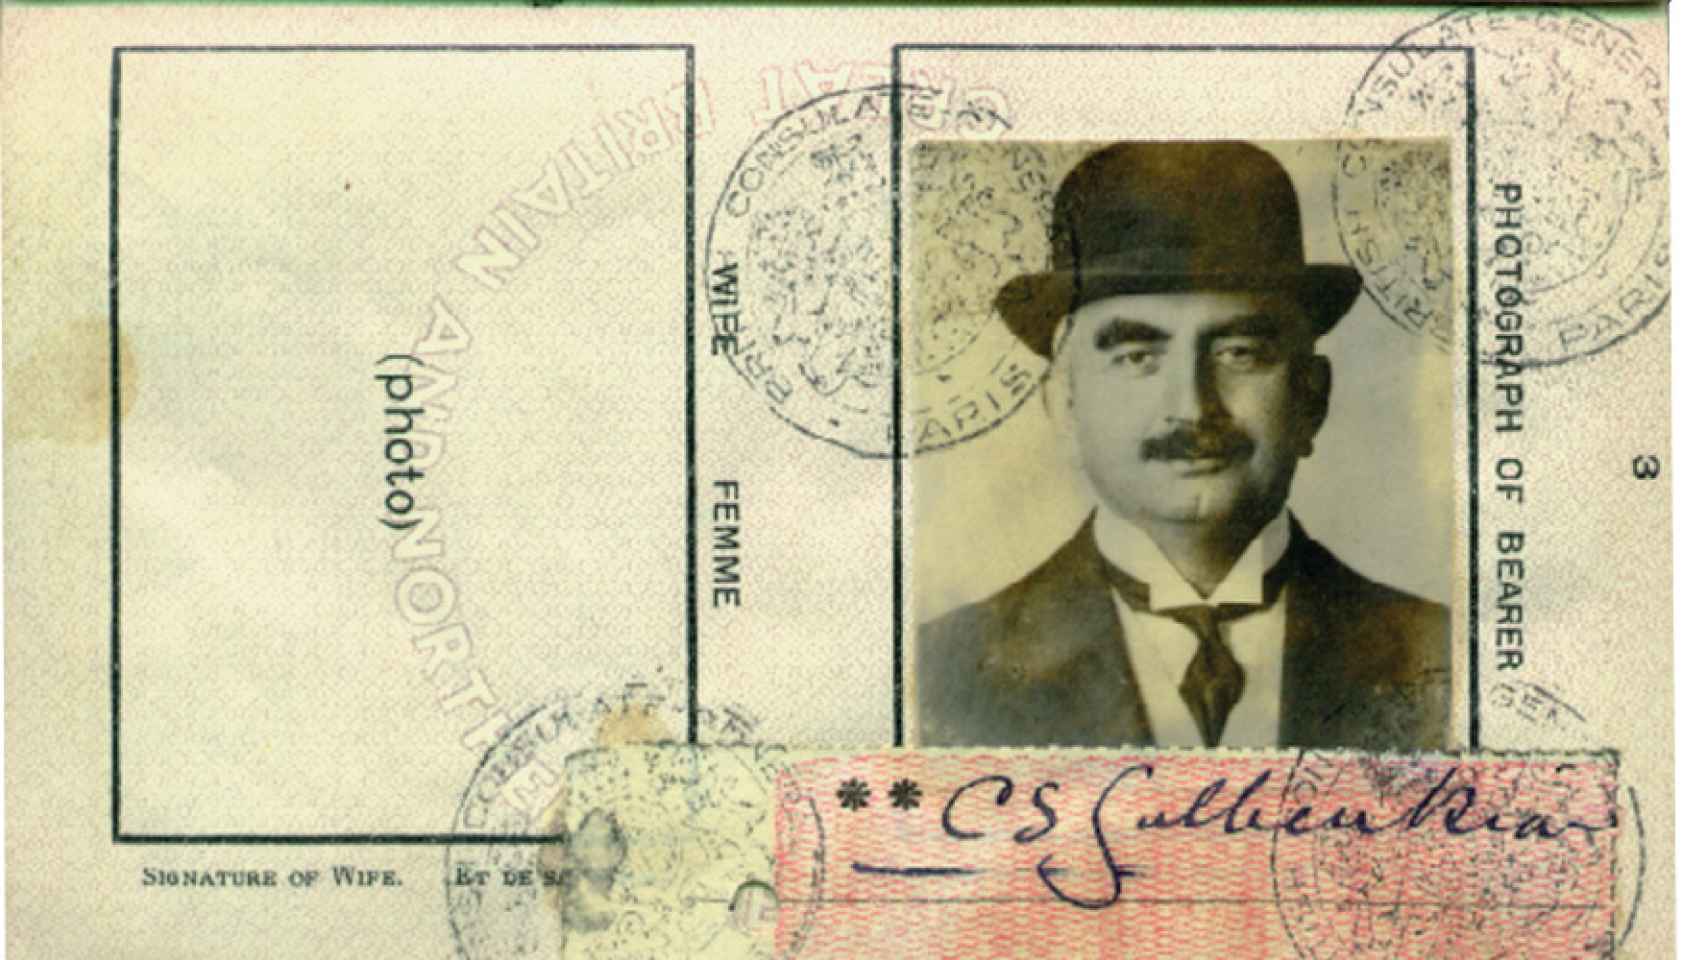 Pasaporte de Calouste Gulbenkian.